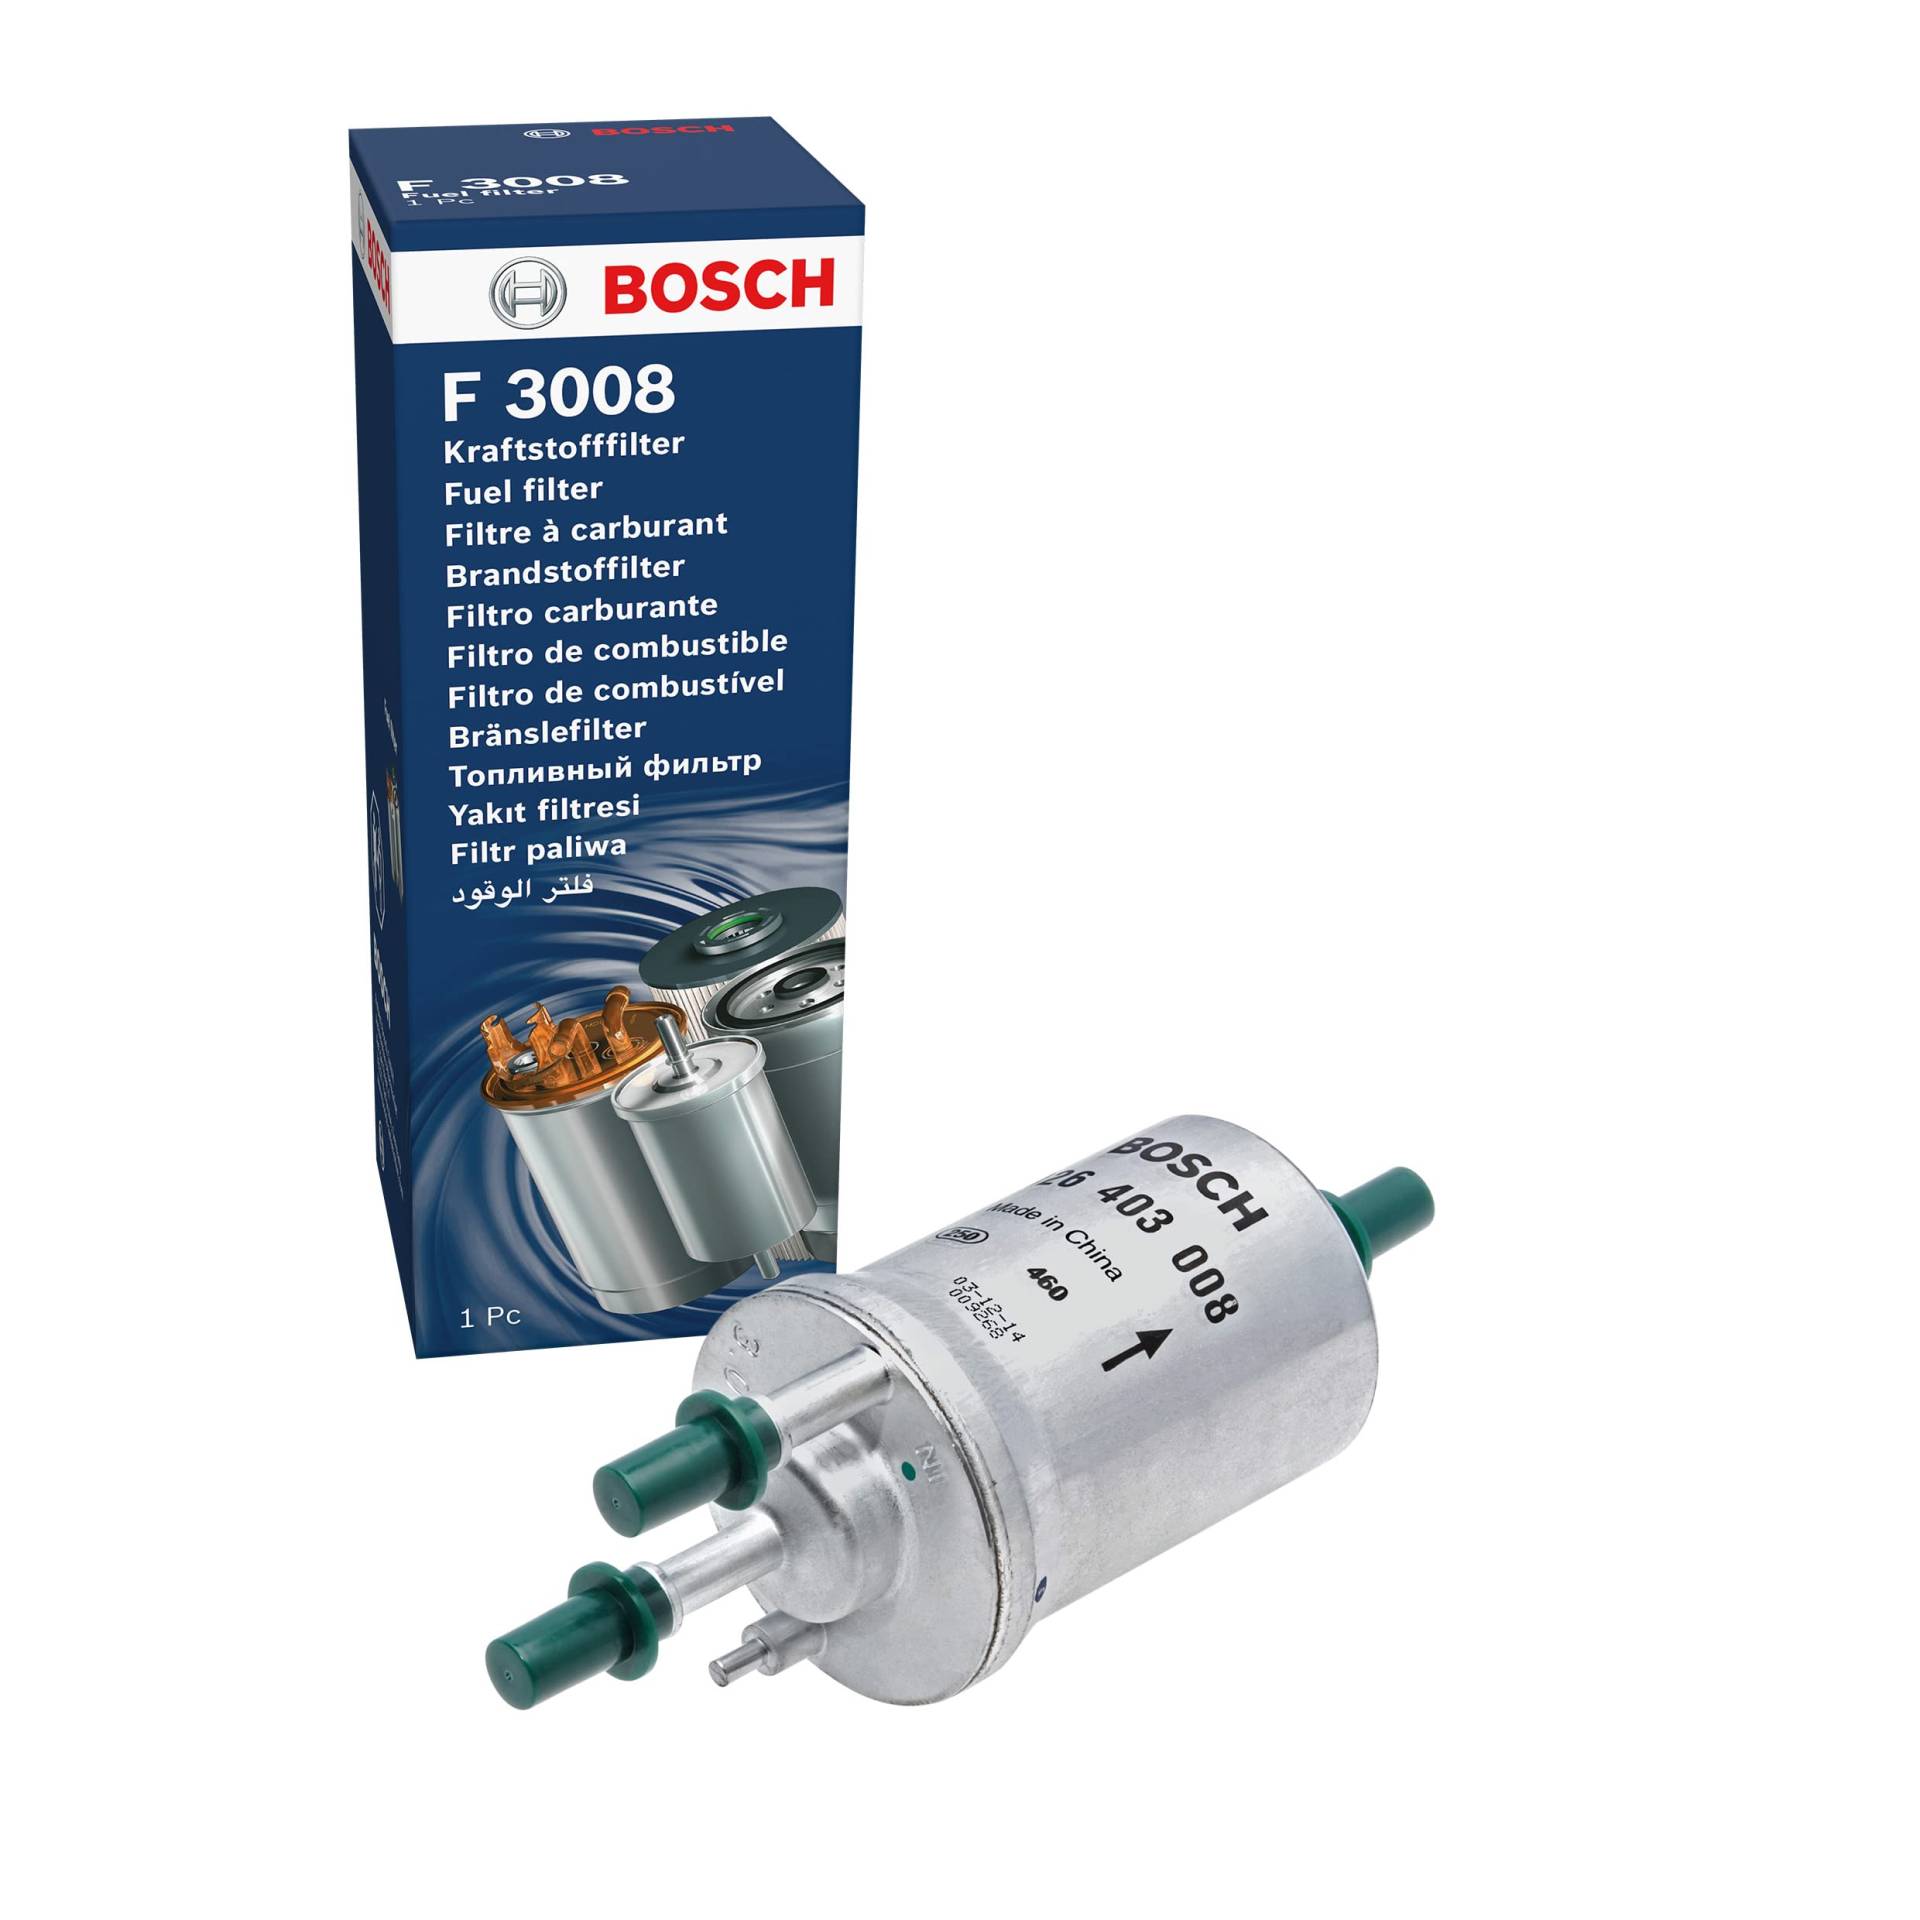 Bosch F3008 - Benzinfilter Auto von Bosch Automotive